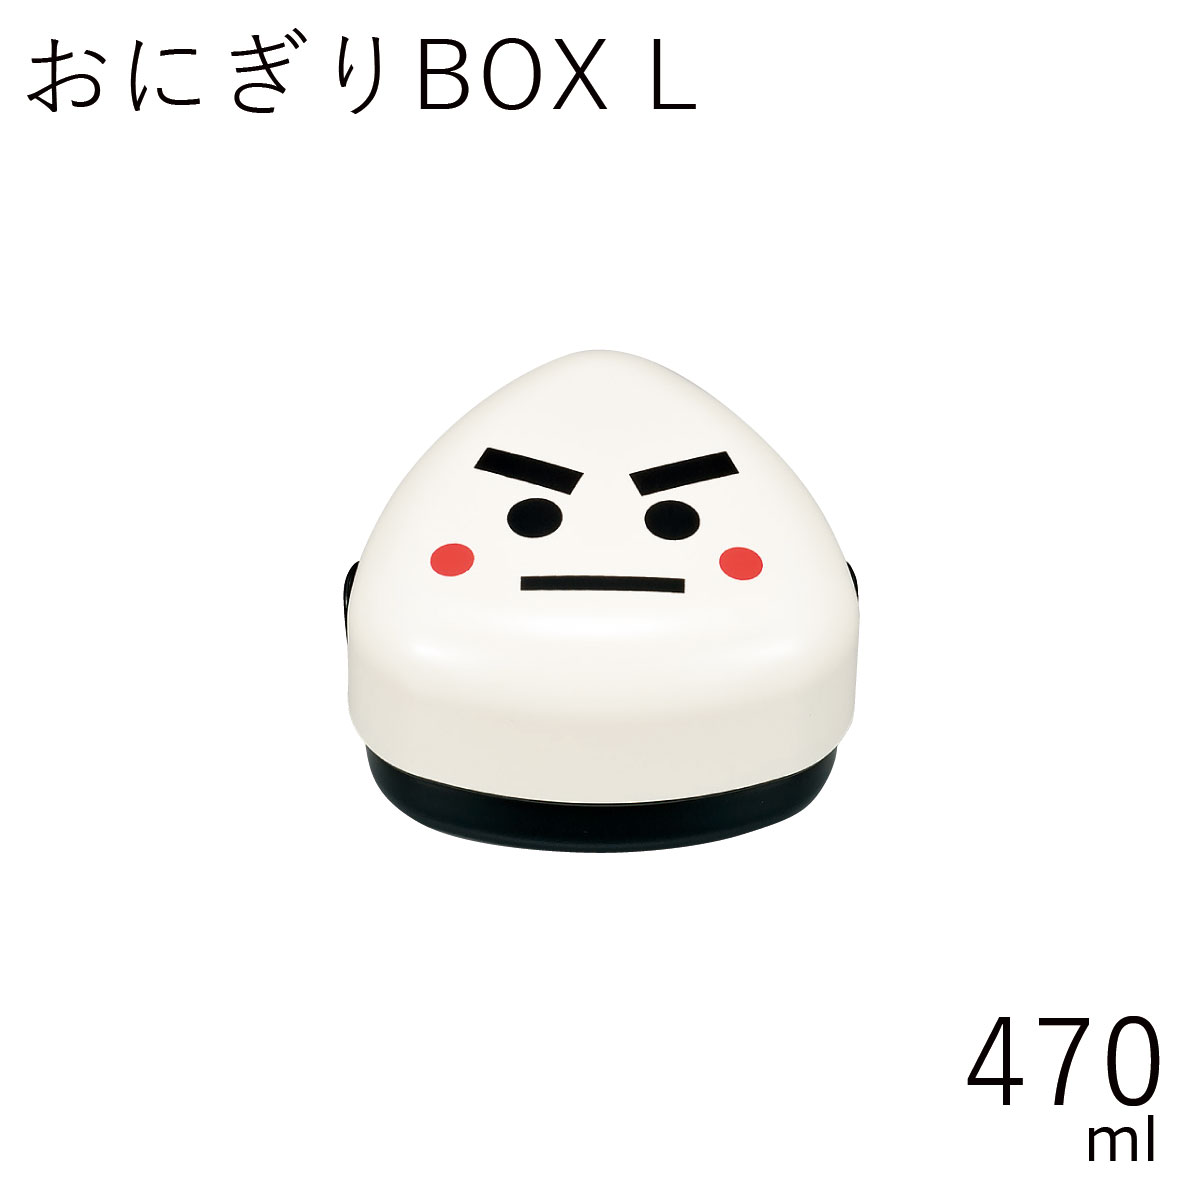 弁当箱”HAKOYA おにぎりBOX L 470ml のりお”おにぎり1個とおかずが入れれる日本製おにぎり専用 弁当箱 おしゃれ LUNCH BOX